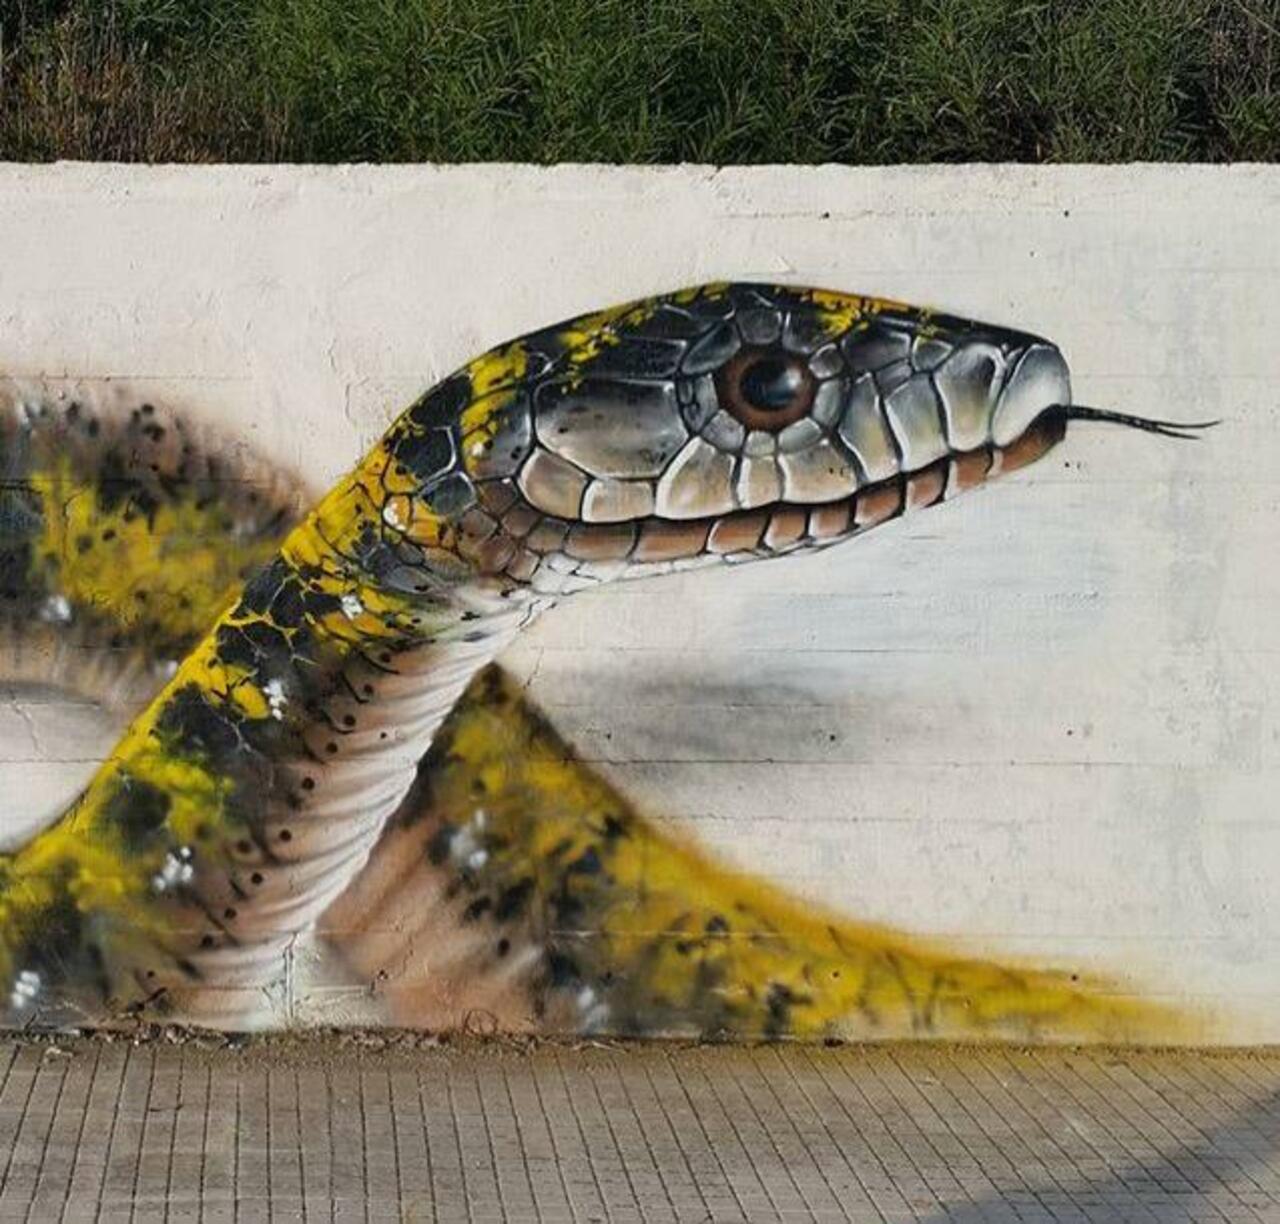 RT belilac "Street Art by Cosimocheone 

#art #graffiti #mural #streetart http://t.co/CcF02EUNeT"